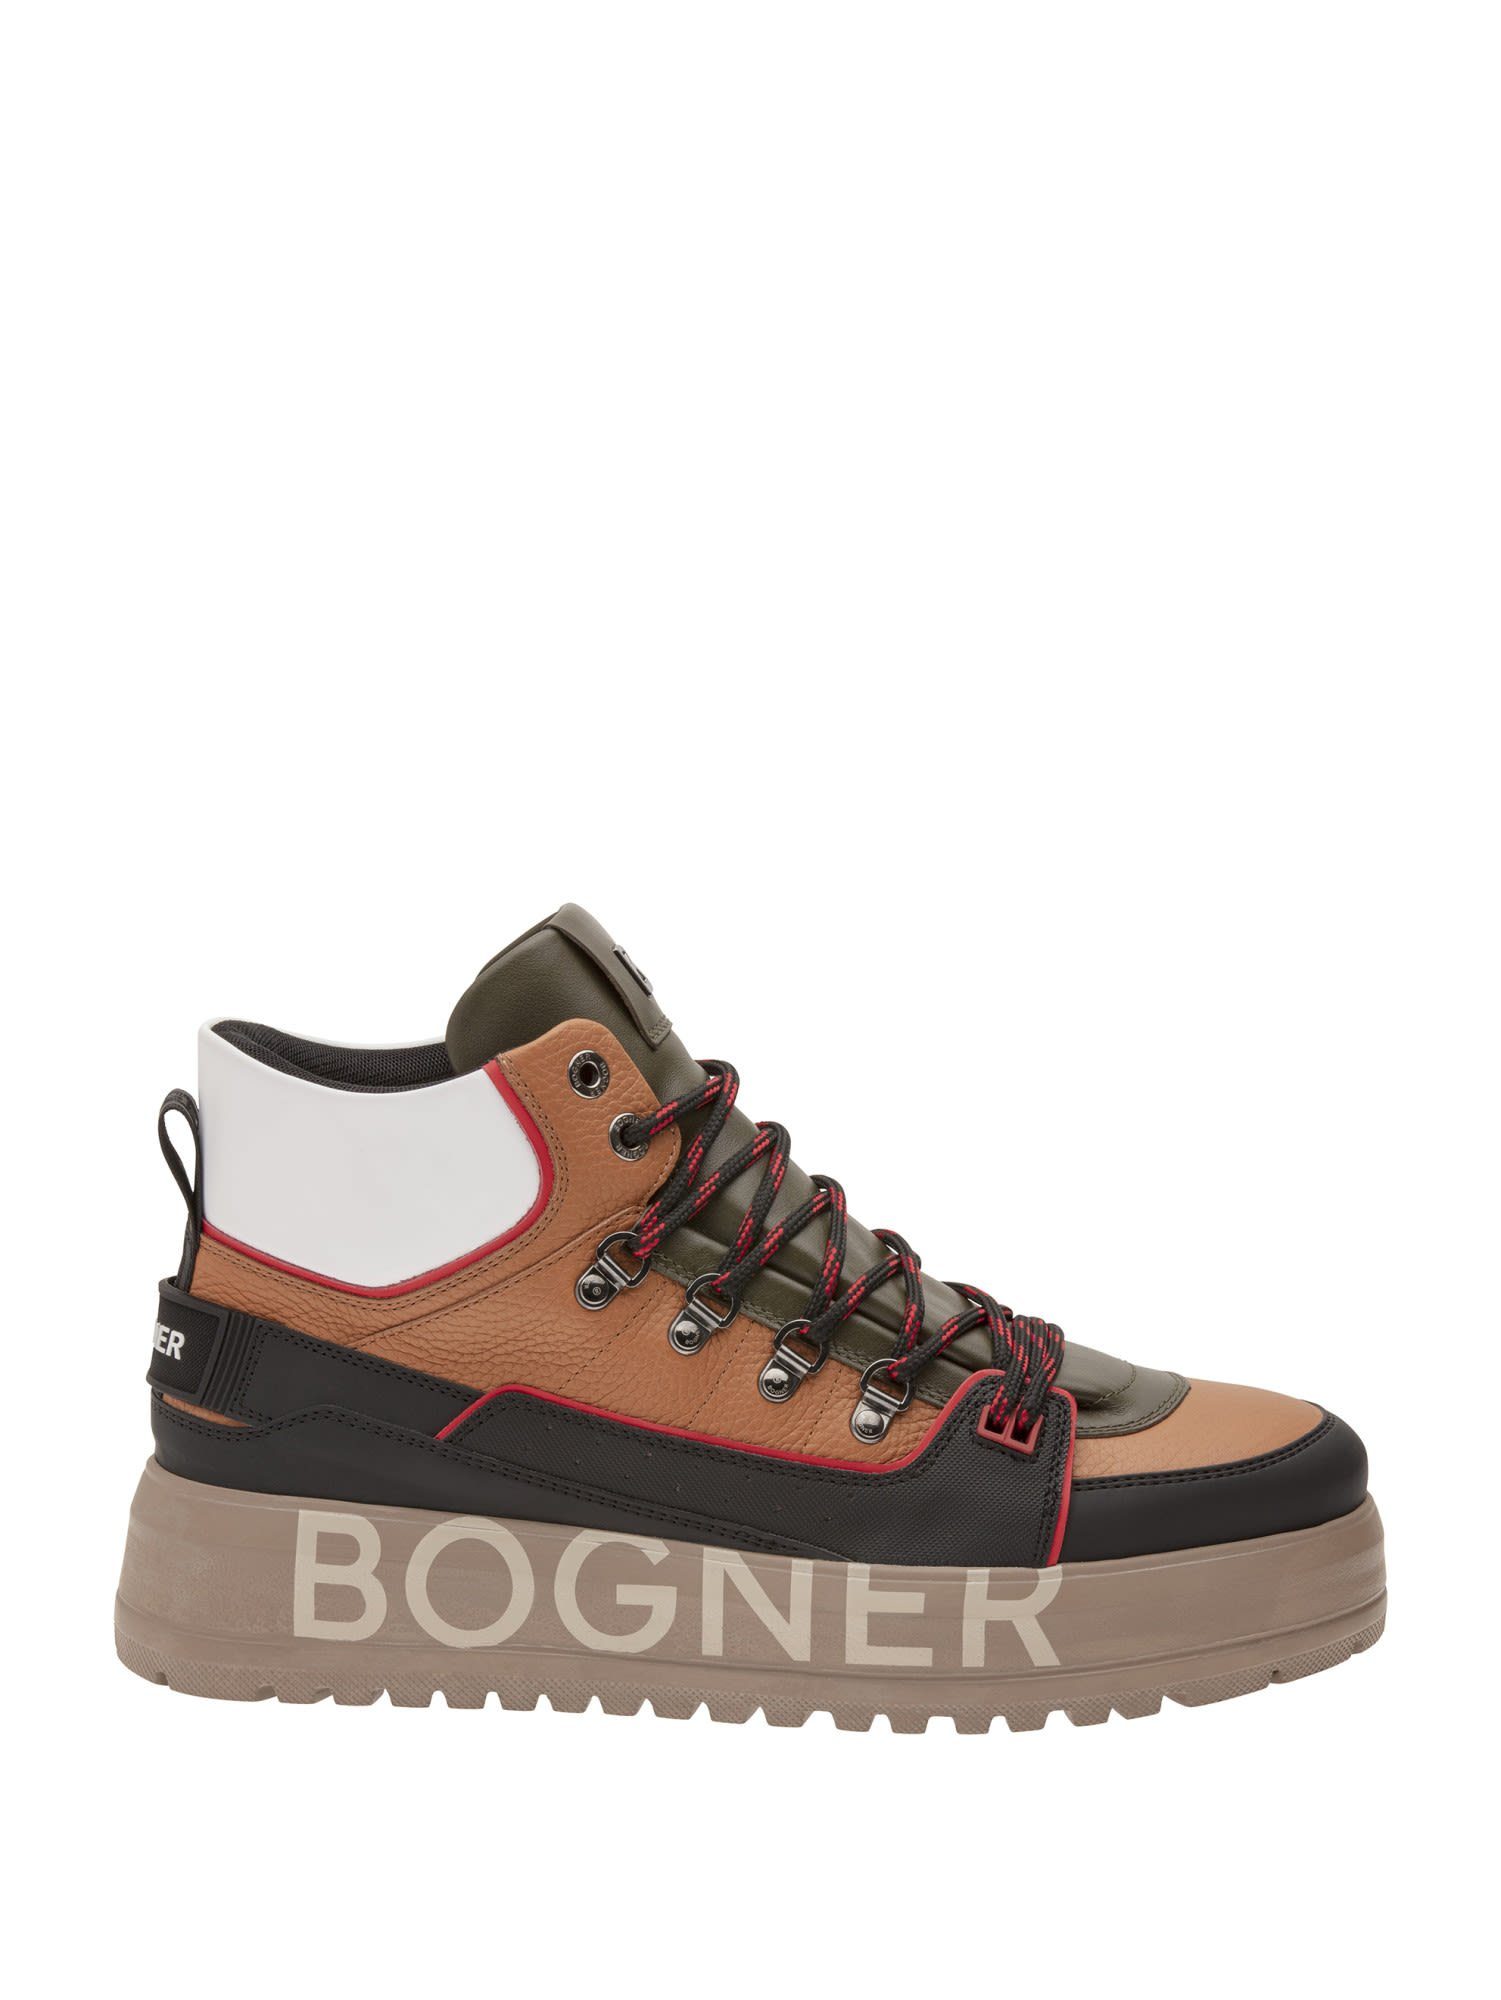 Bogner Schuhe Outlet online kaufen | OTTO